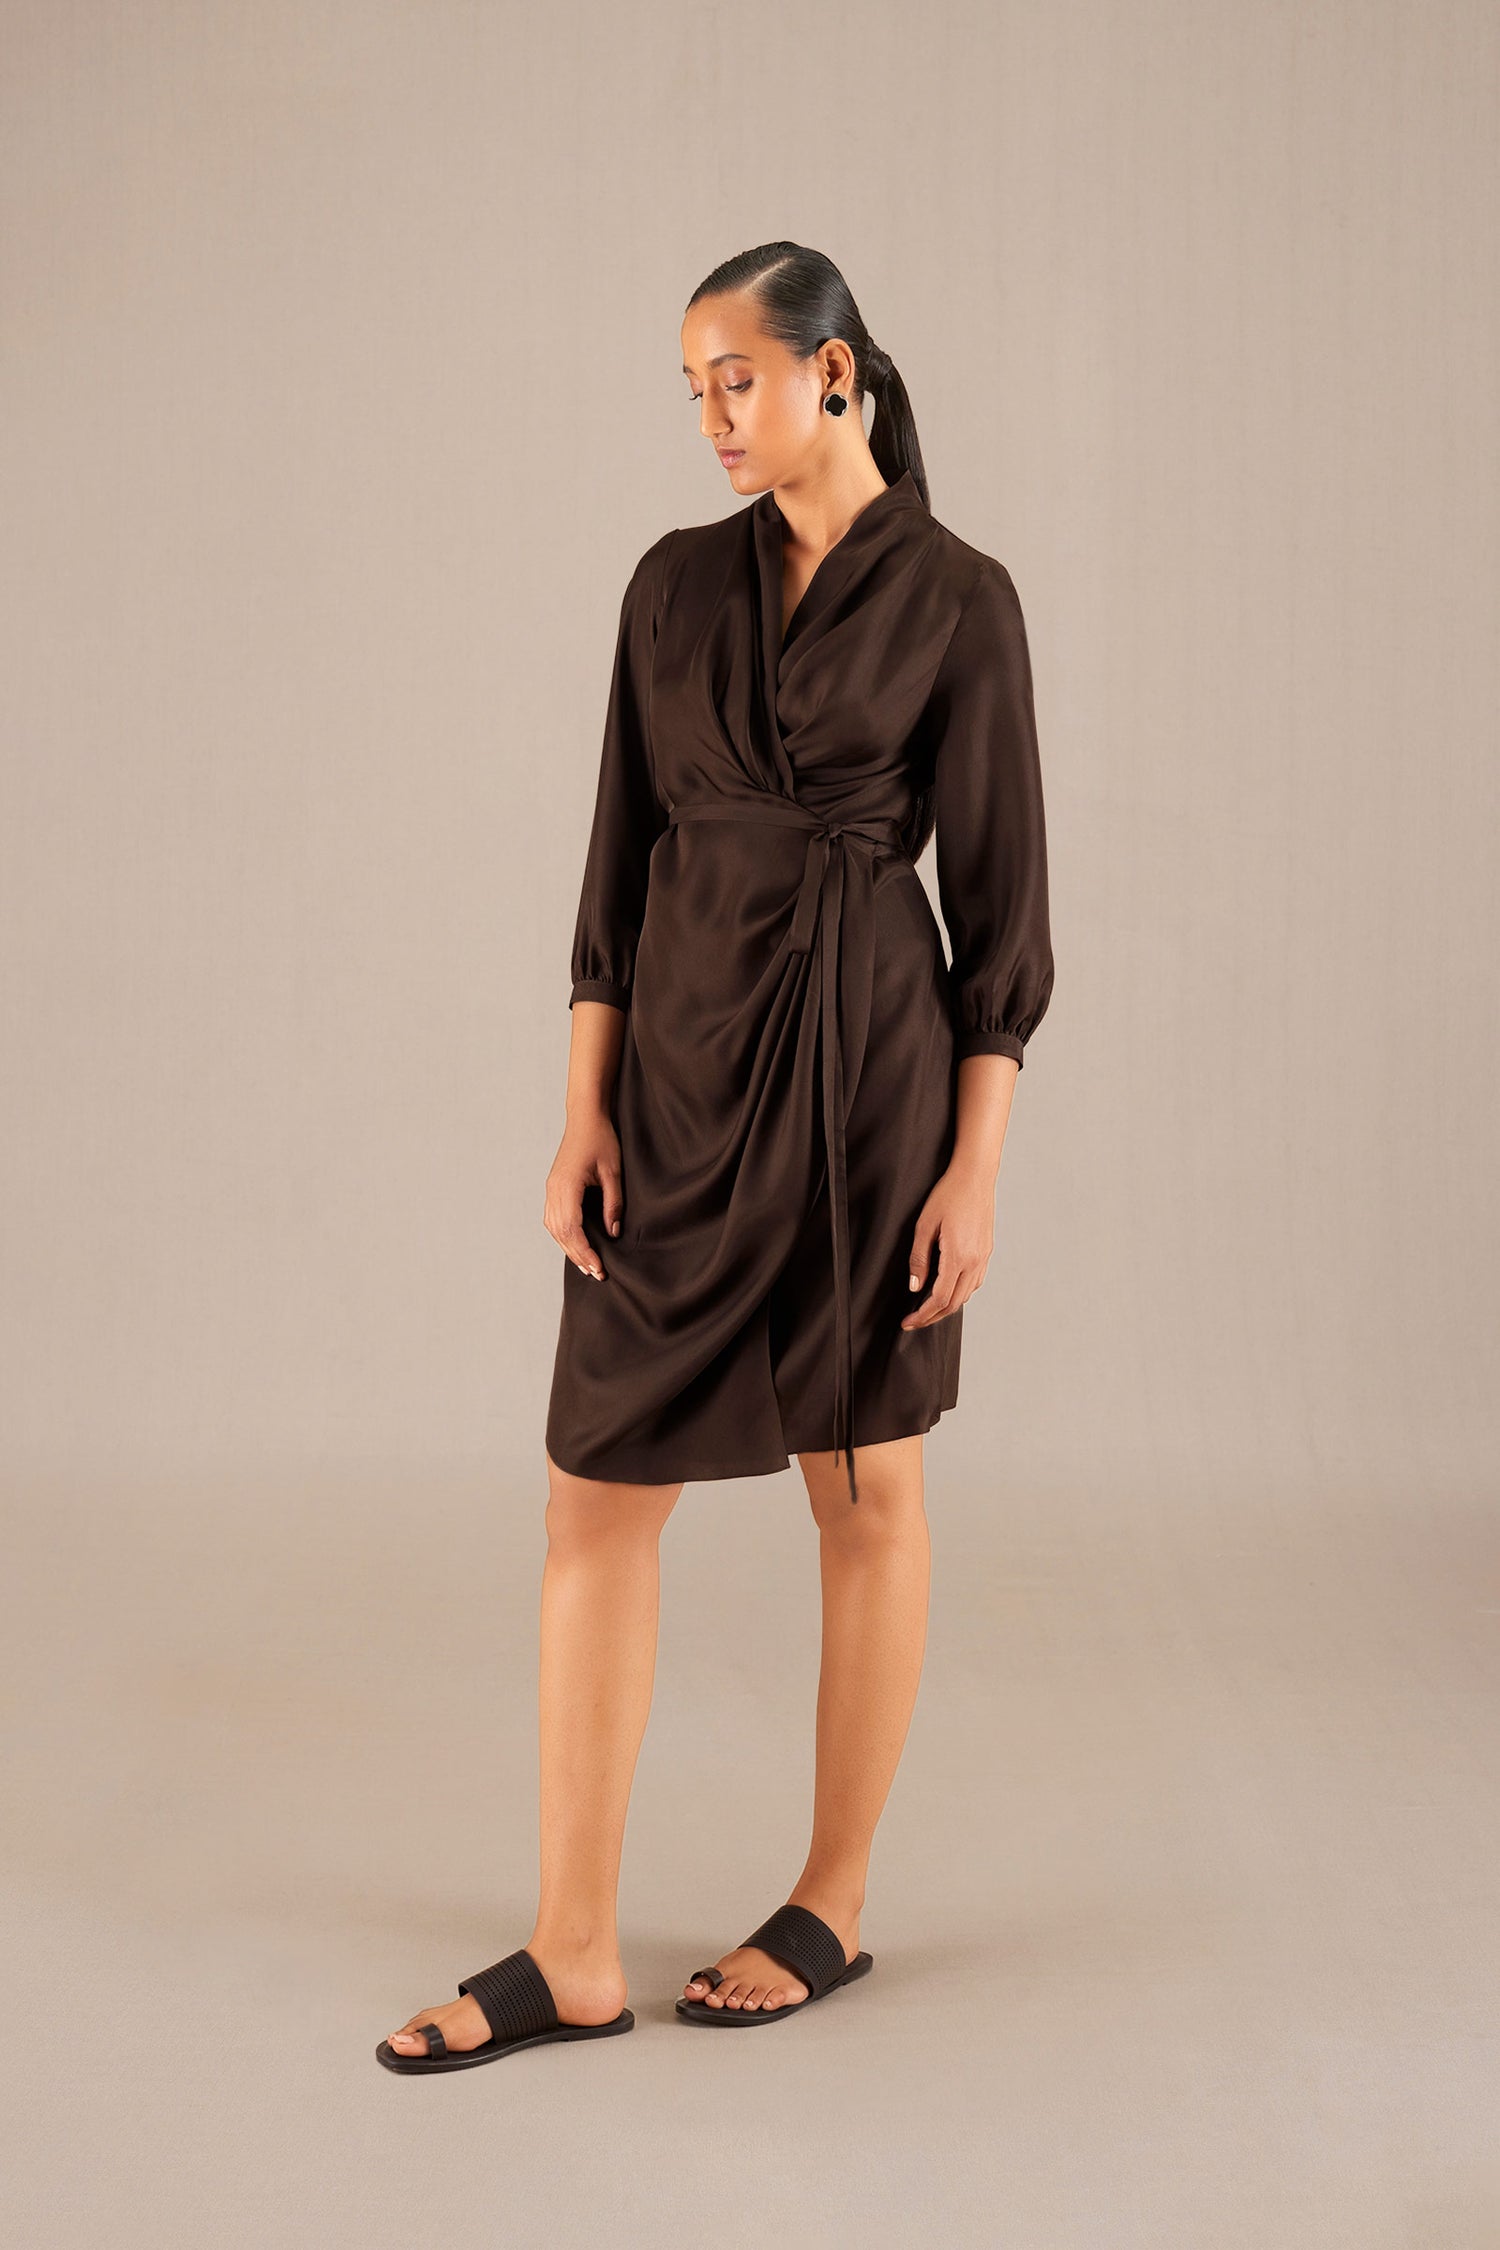 Neesa Short Dress  - Dark Brown